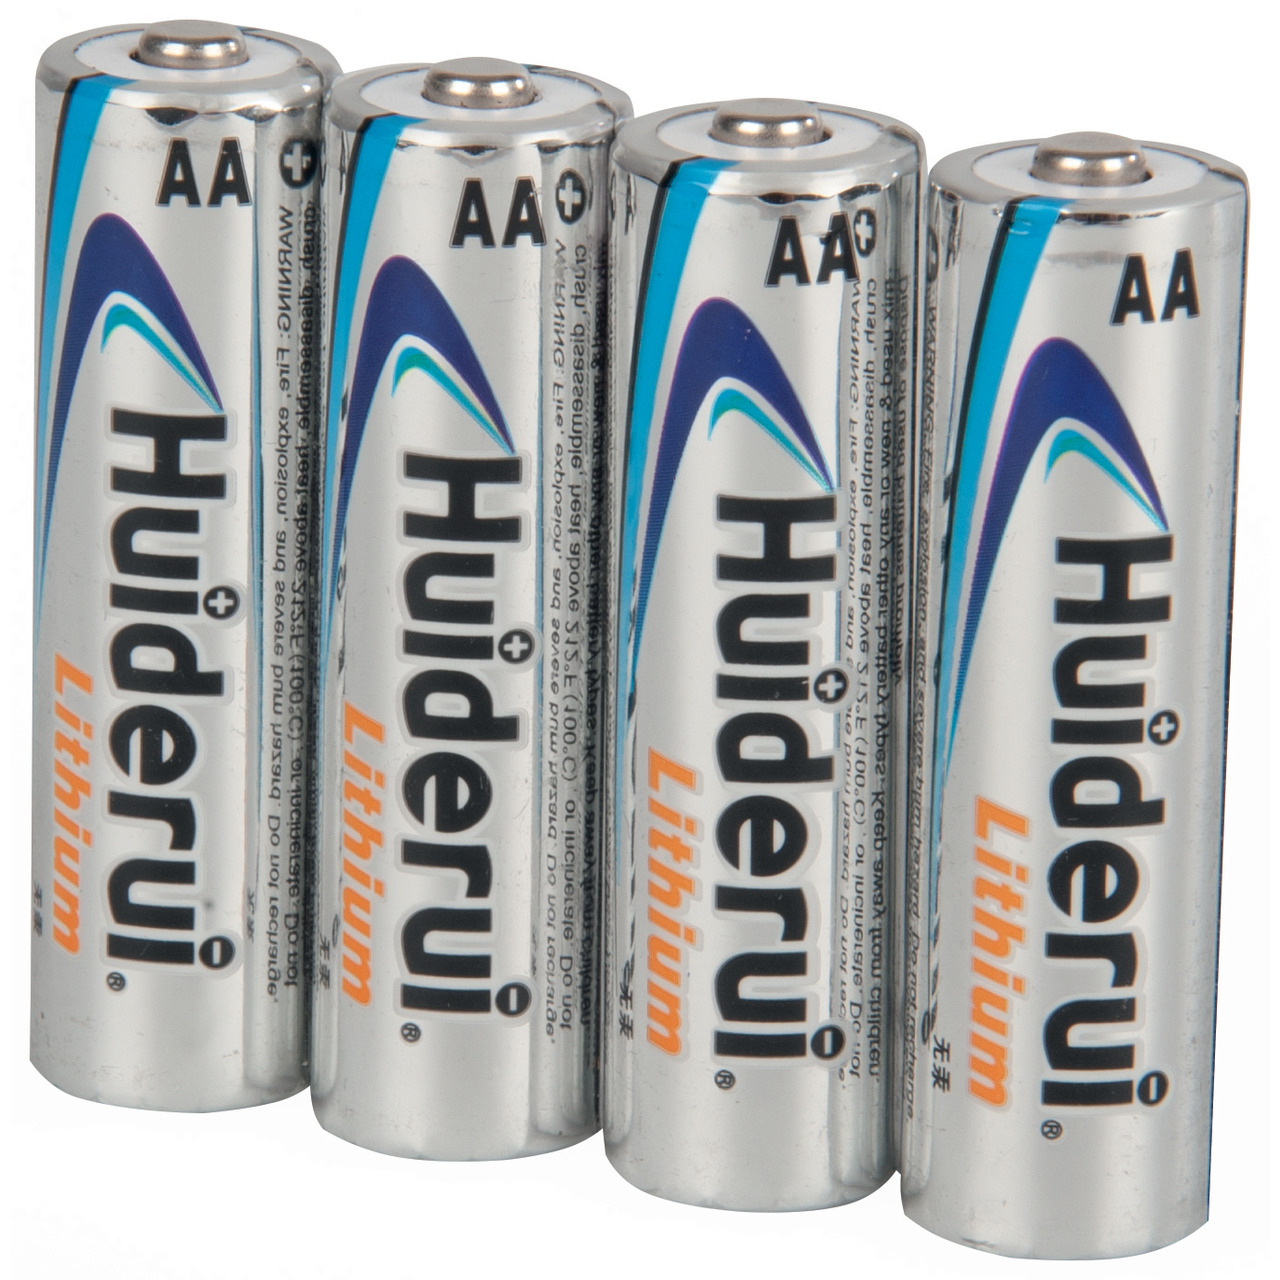 Huiderui Lithium Batterie Mignon AA- 4er Pack unter Stromversorgung